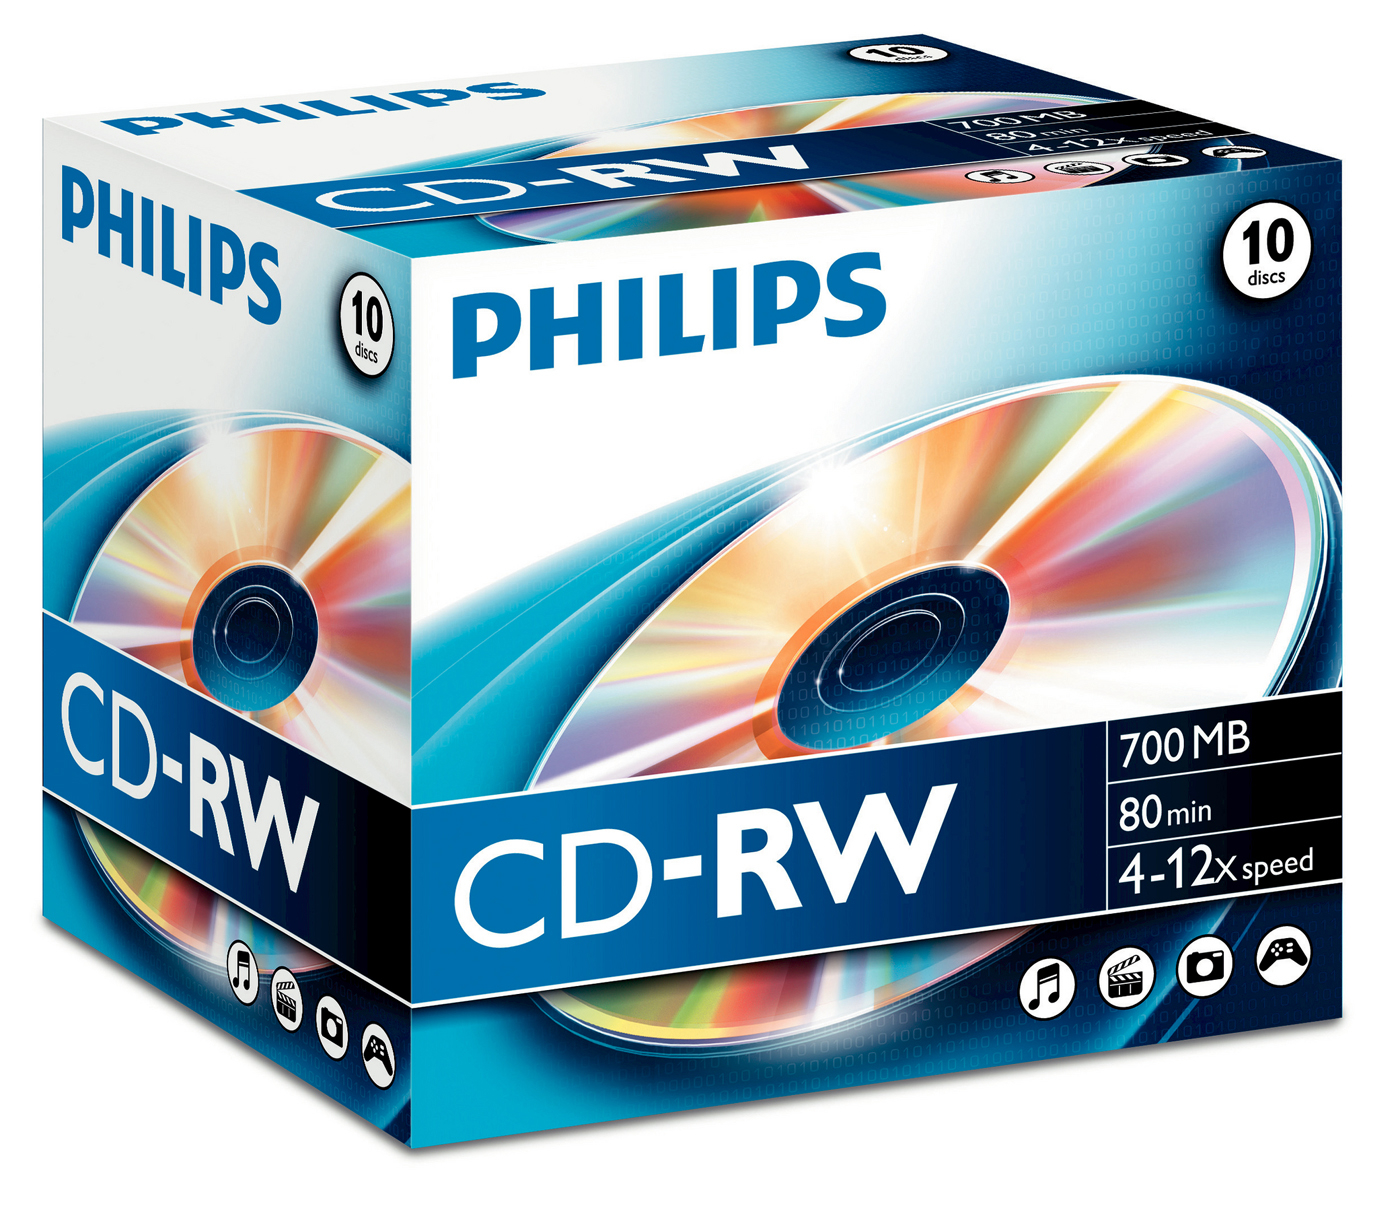 PHILIPS CD-RW Jewel 80 Min./700MB 4651 10 Pcs